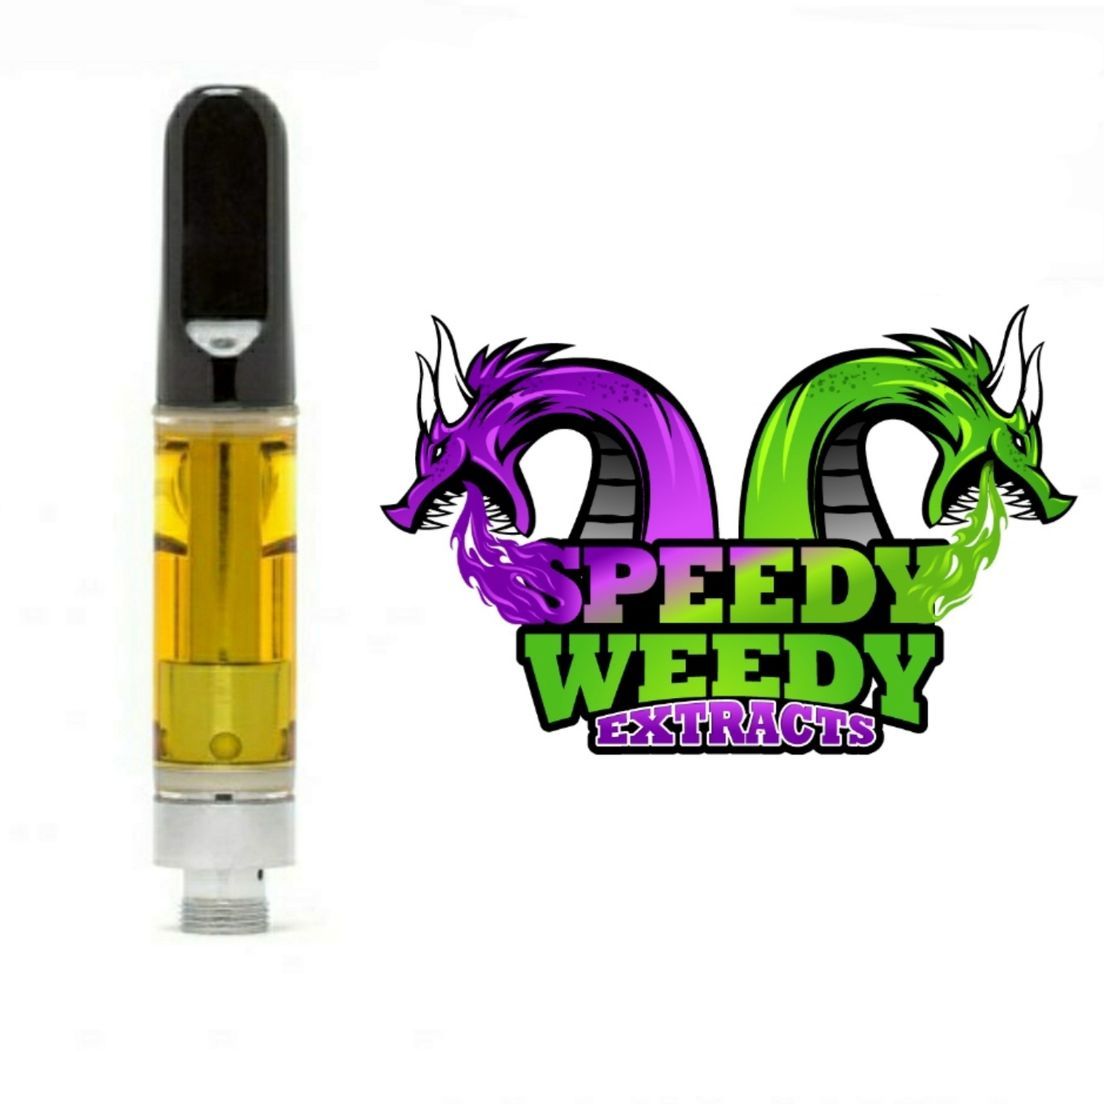 1. Speedy Weedy 1g Cartridge - Blue Razz